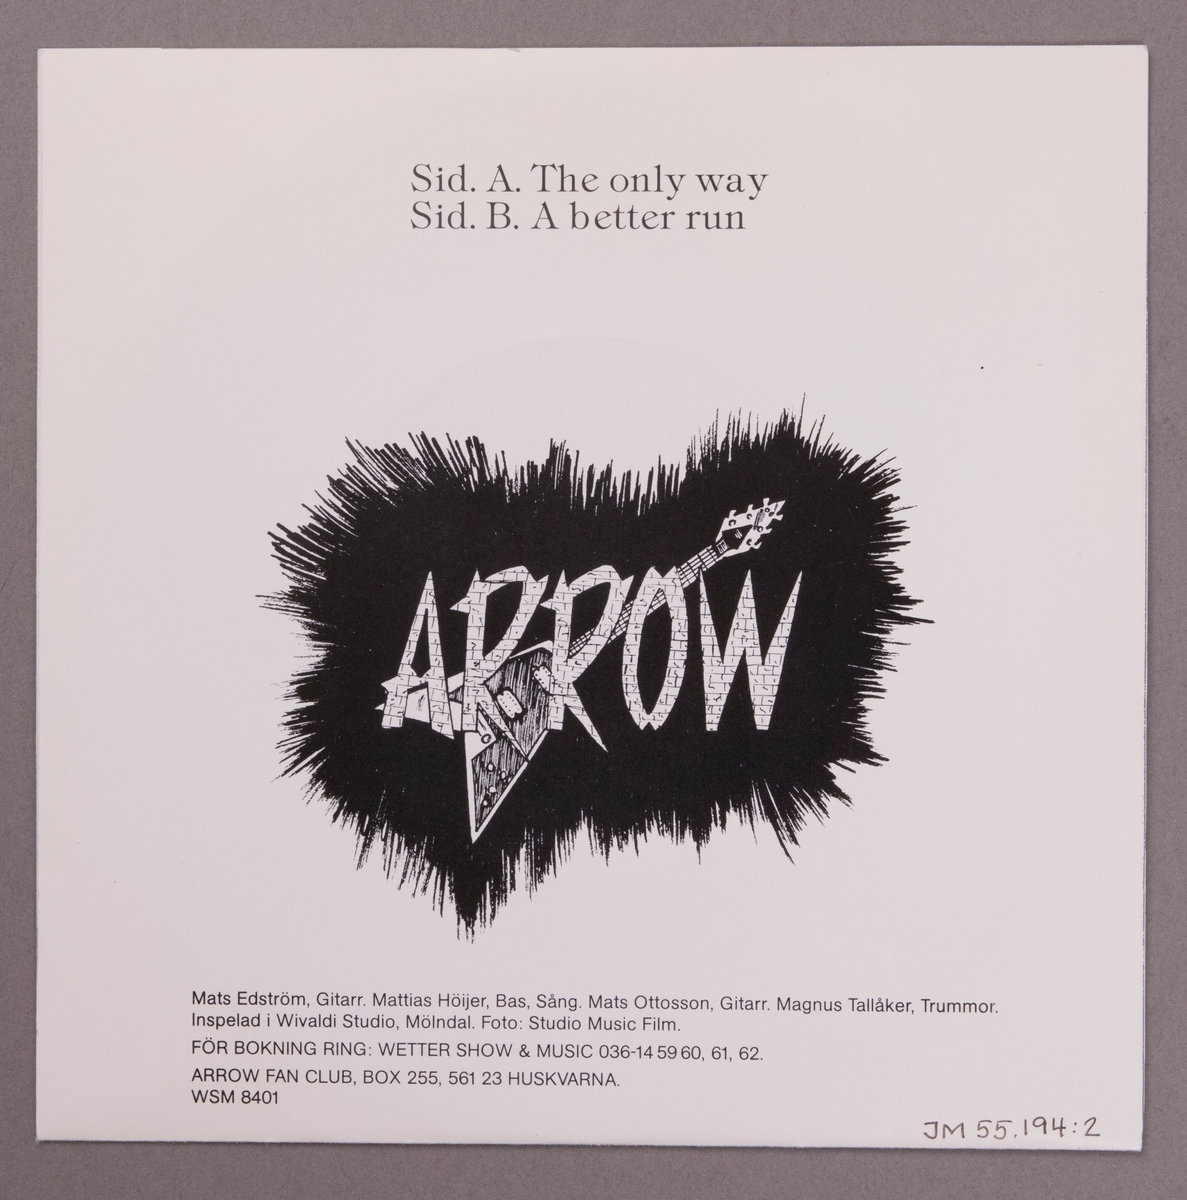 Singel-skiva av svart vinyl med röd papperetikett, i omslag av papper. Omslagets framsida har ett svart-vitt gruppfotografi av bandmedlemmarna.

Innehåll
Sid A: The only way
Sid B: A better run

JM 55194:1, Skiva
JM 55194:2, Omslag